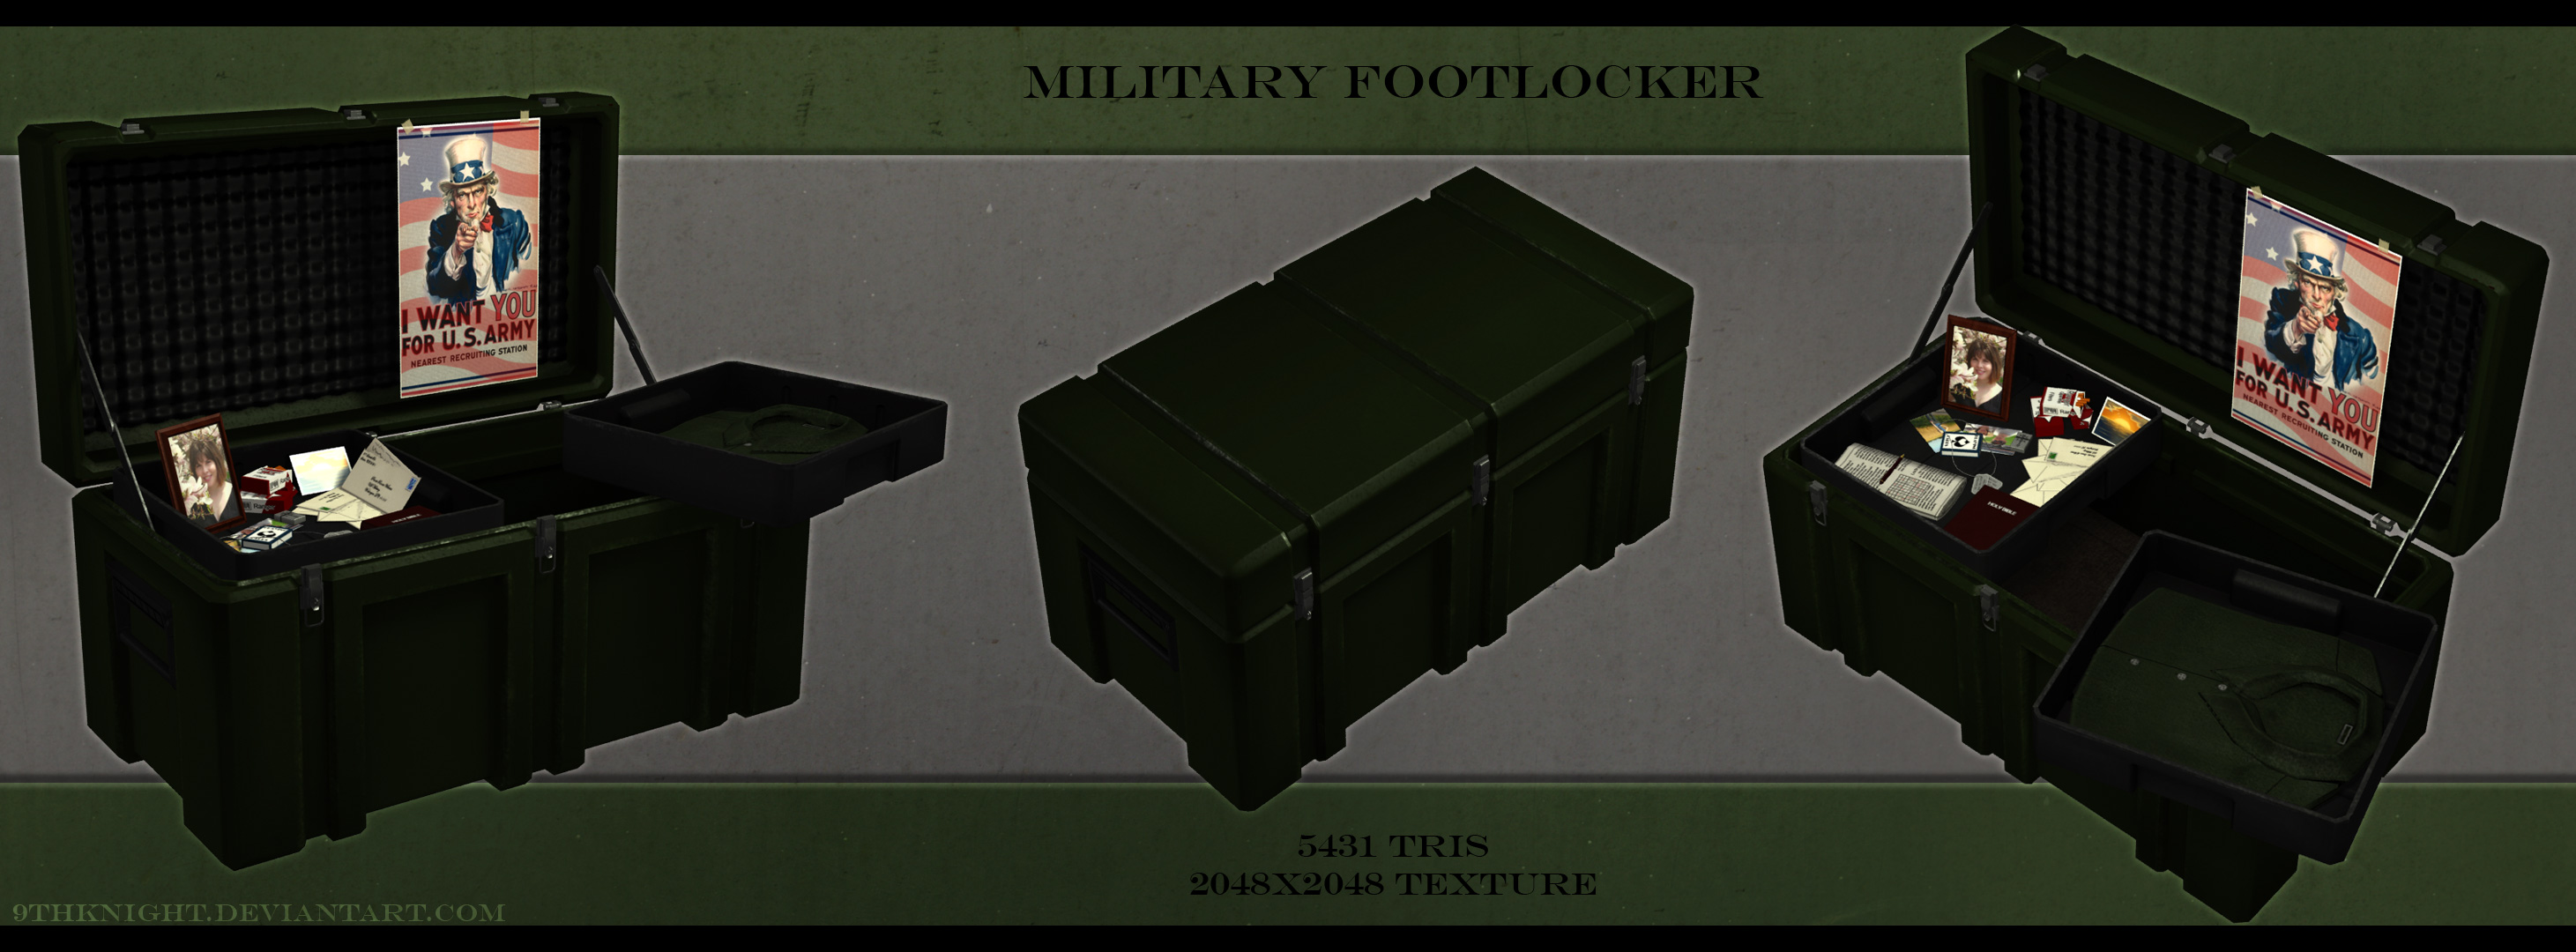 military_footlocker_by_9thknight-d3b5jw8.jpg